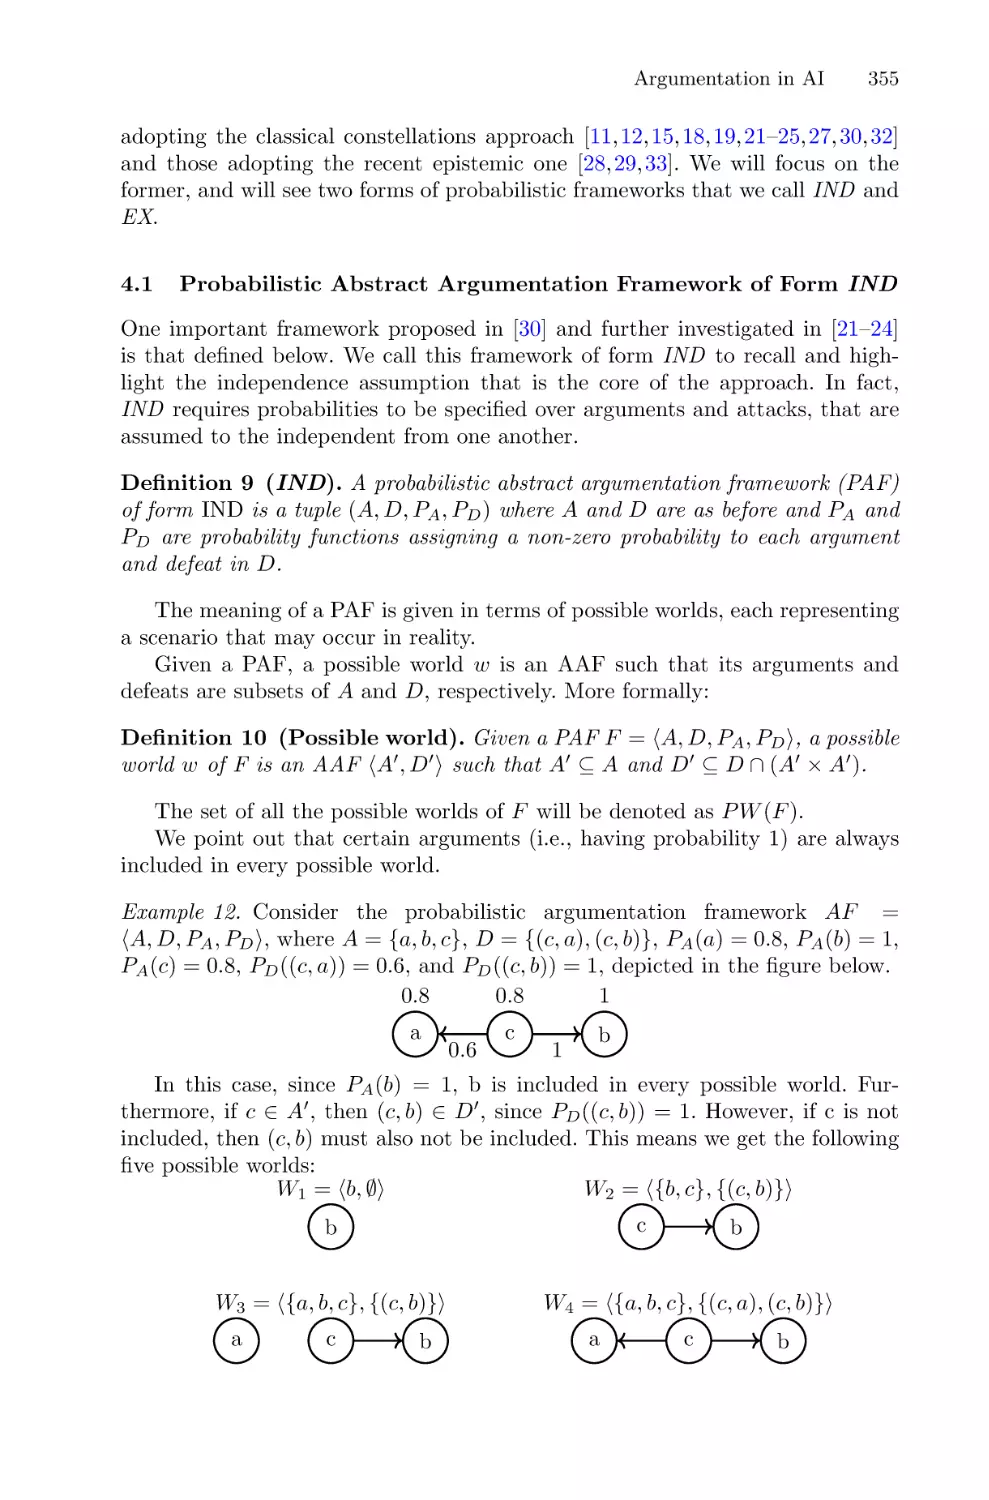 4.1 Probabilistic Abstract Argumentation Framework of Form IND